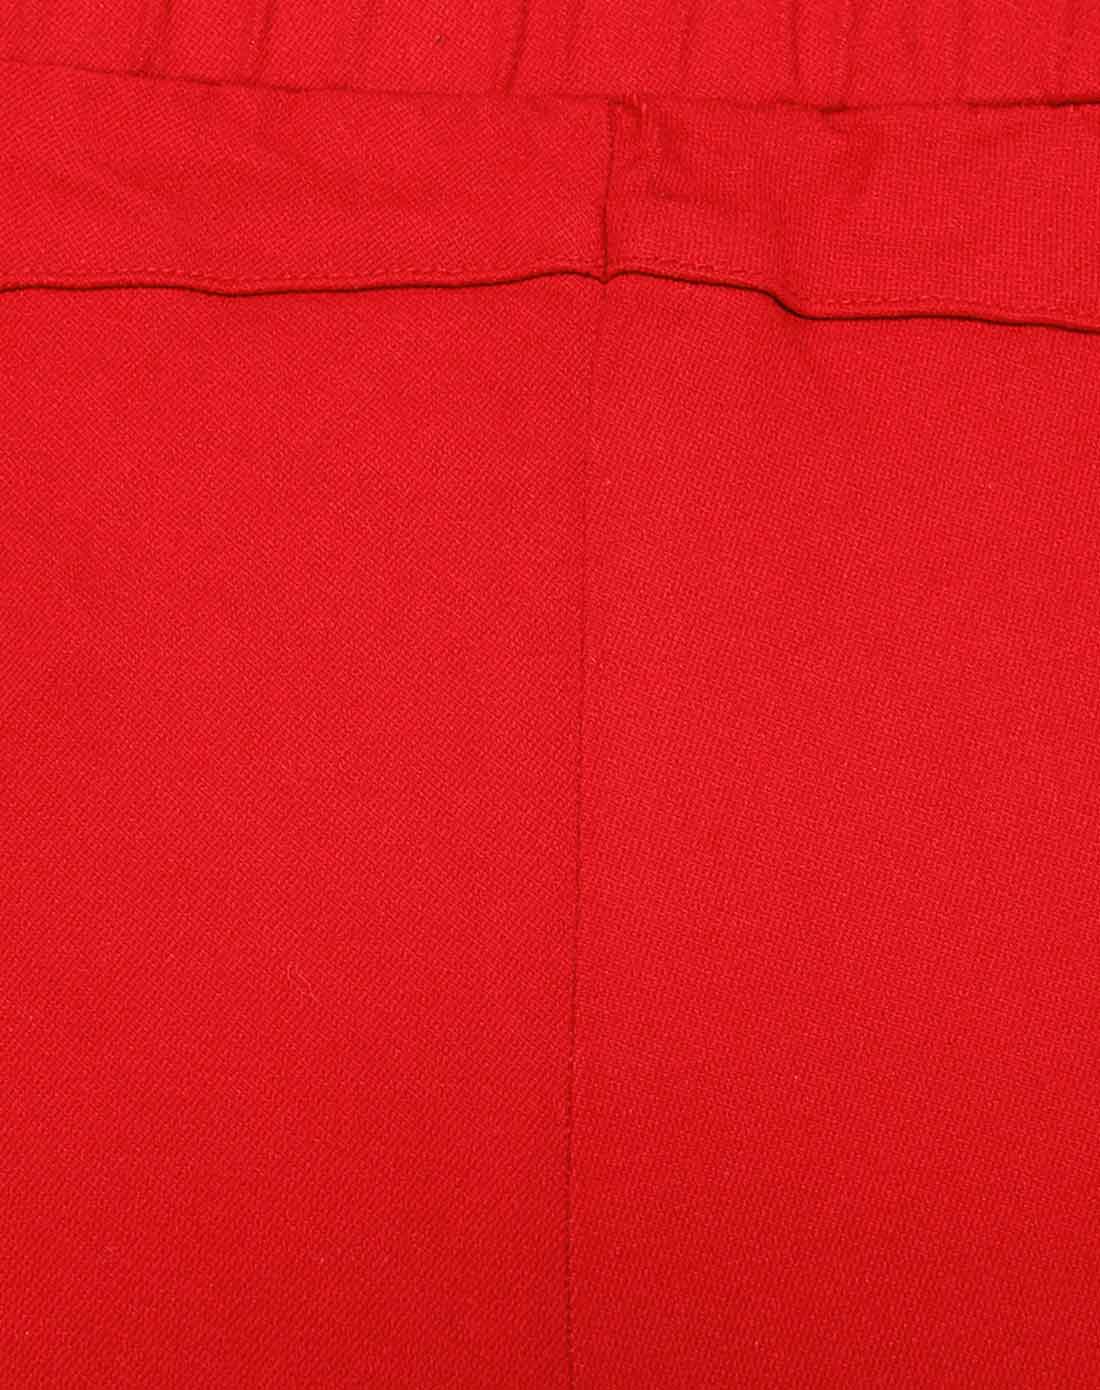 大红色纯色修身休闲长裤